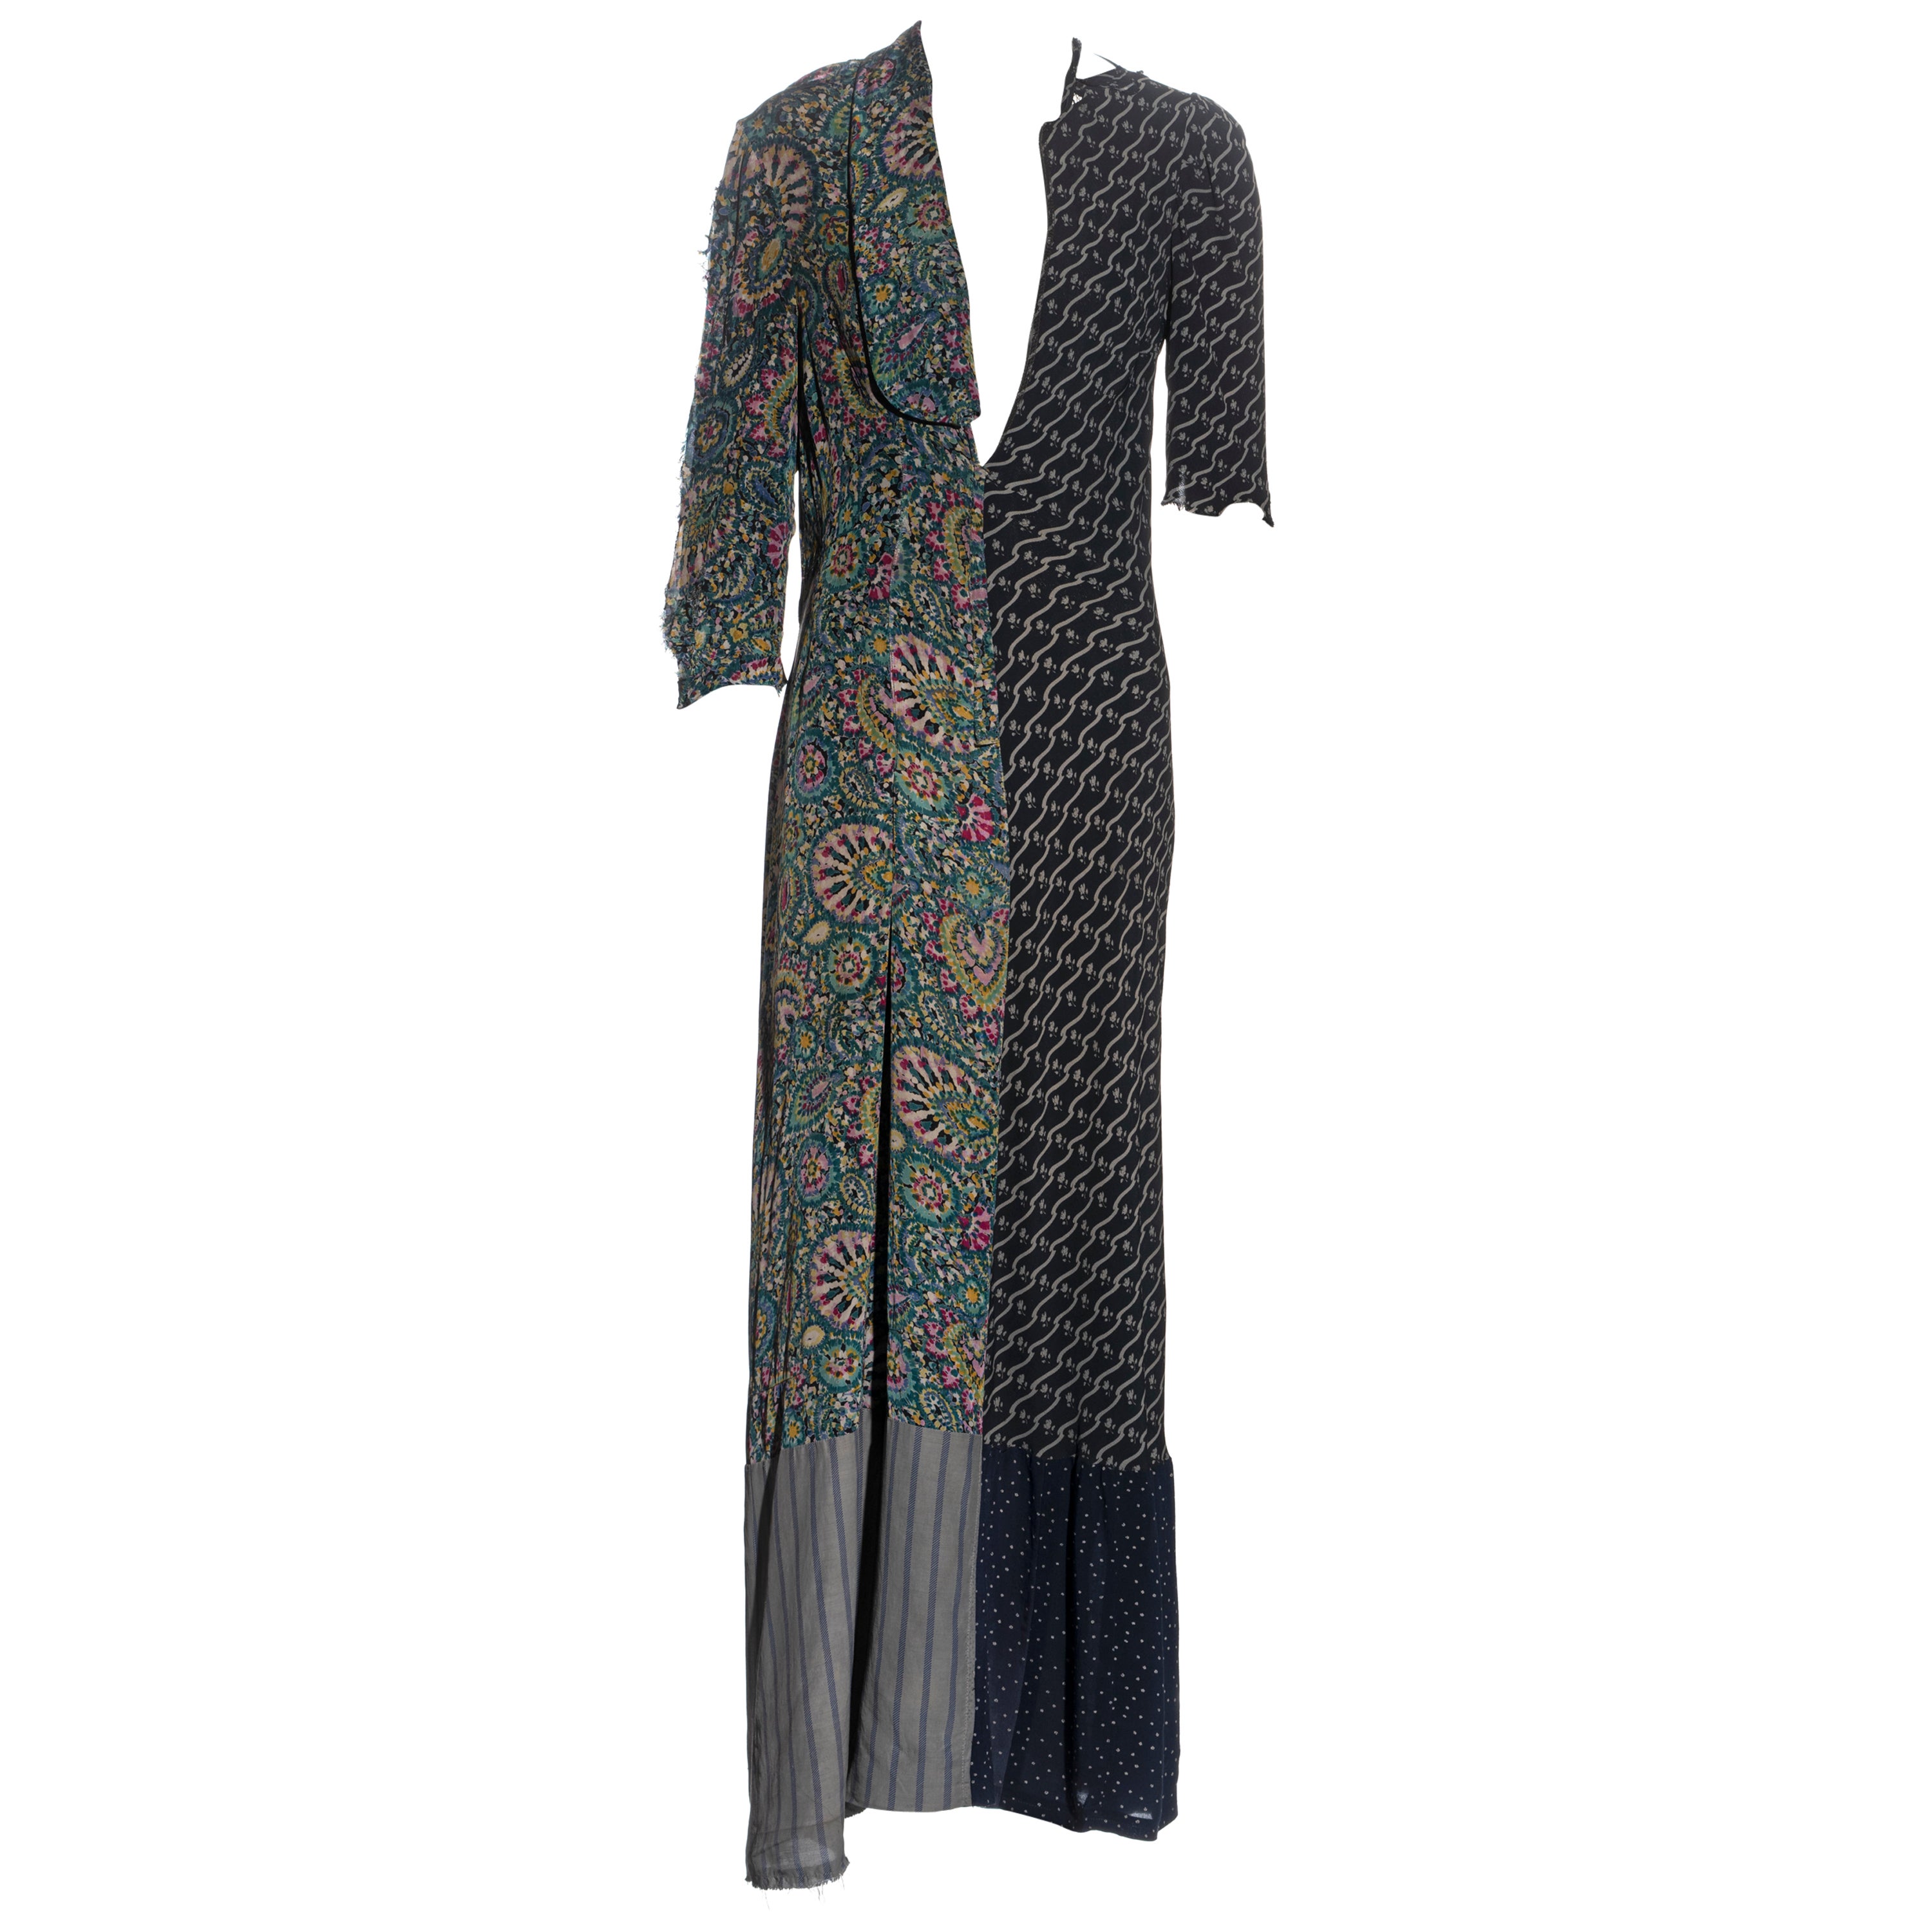 Kunsthandwerkliches Kleid von Martin Margiela aus wiederverwerteten Vintage-Kleidern, H/W 1993